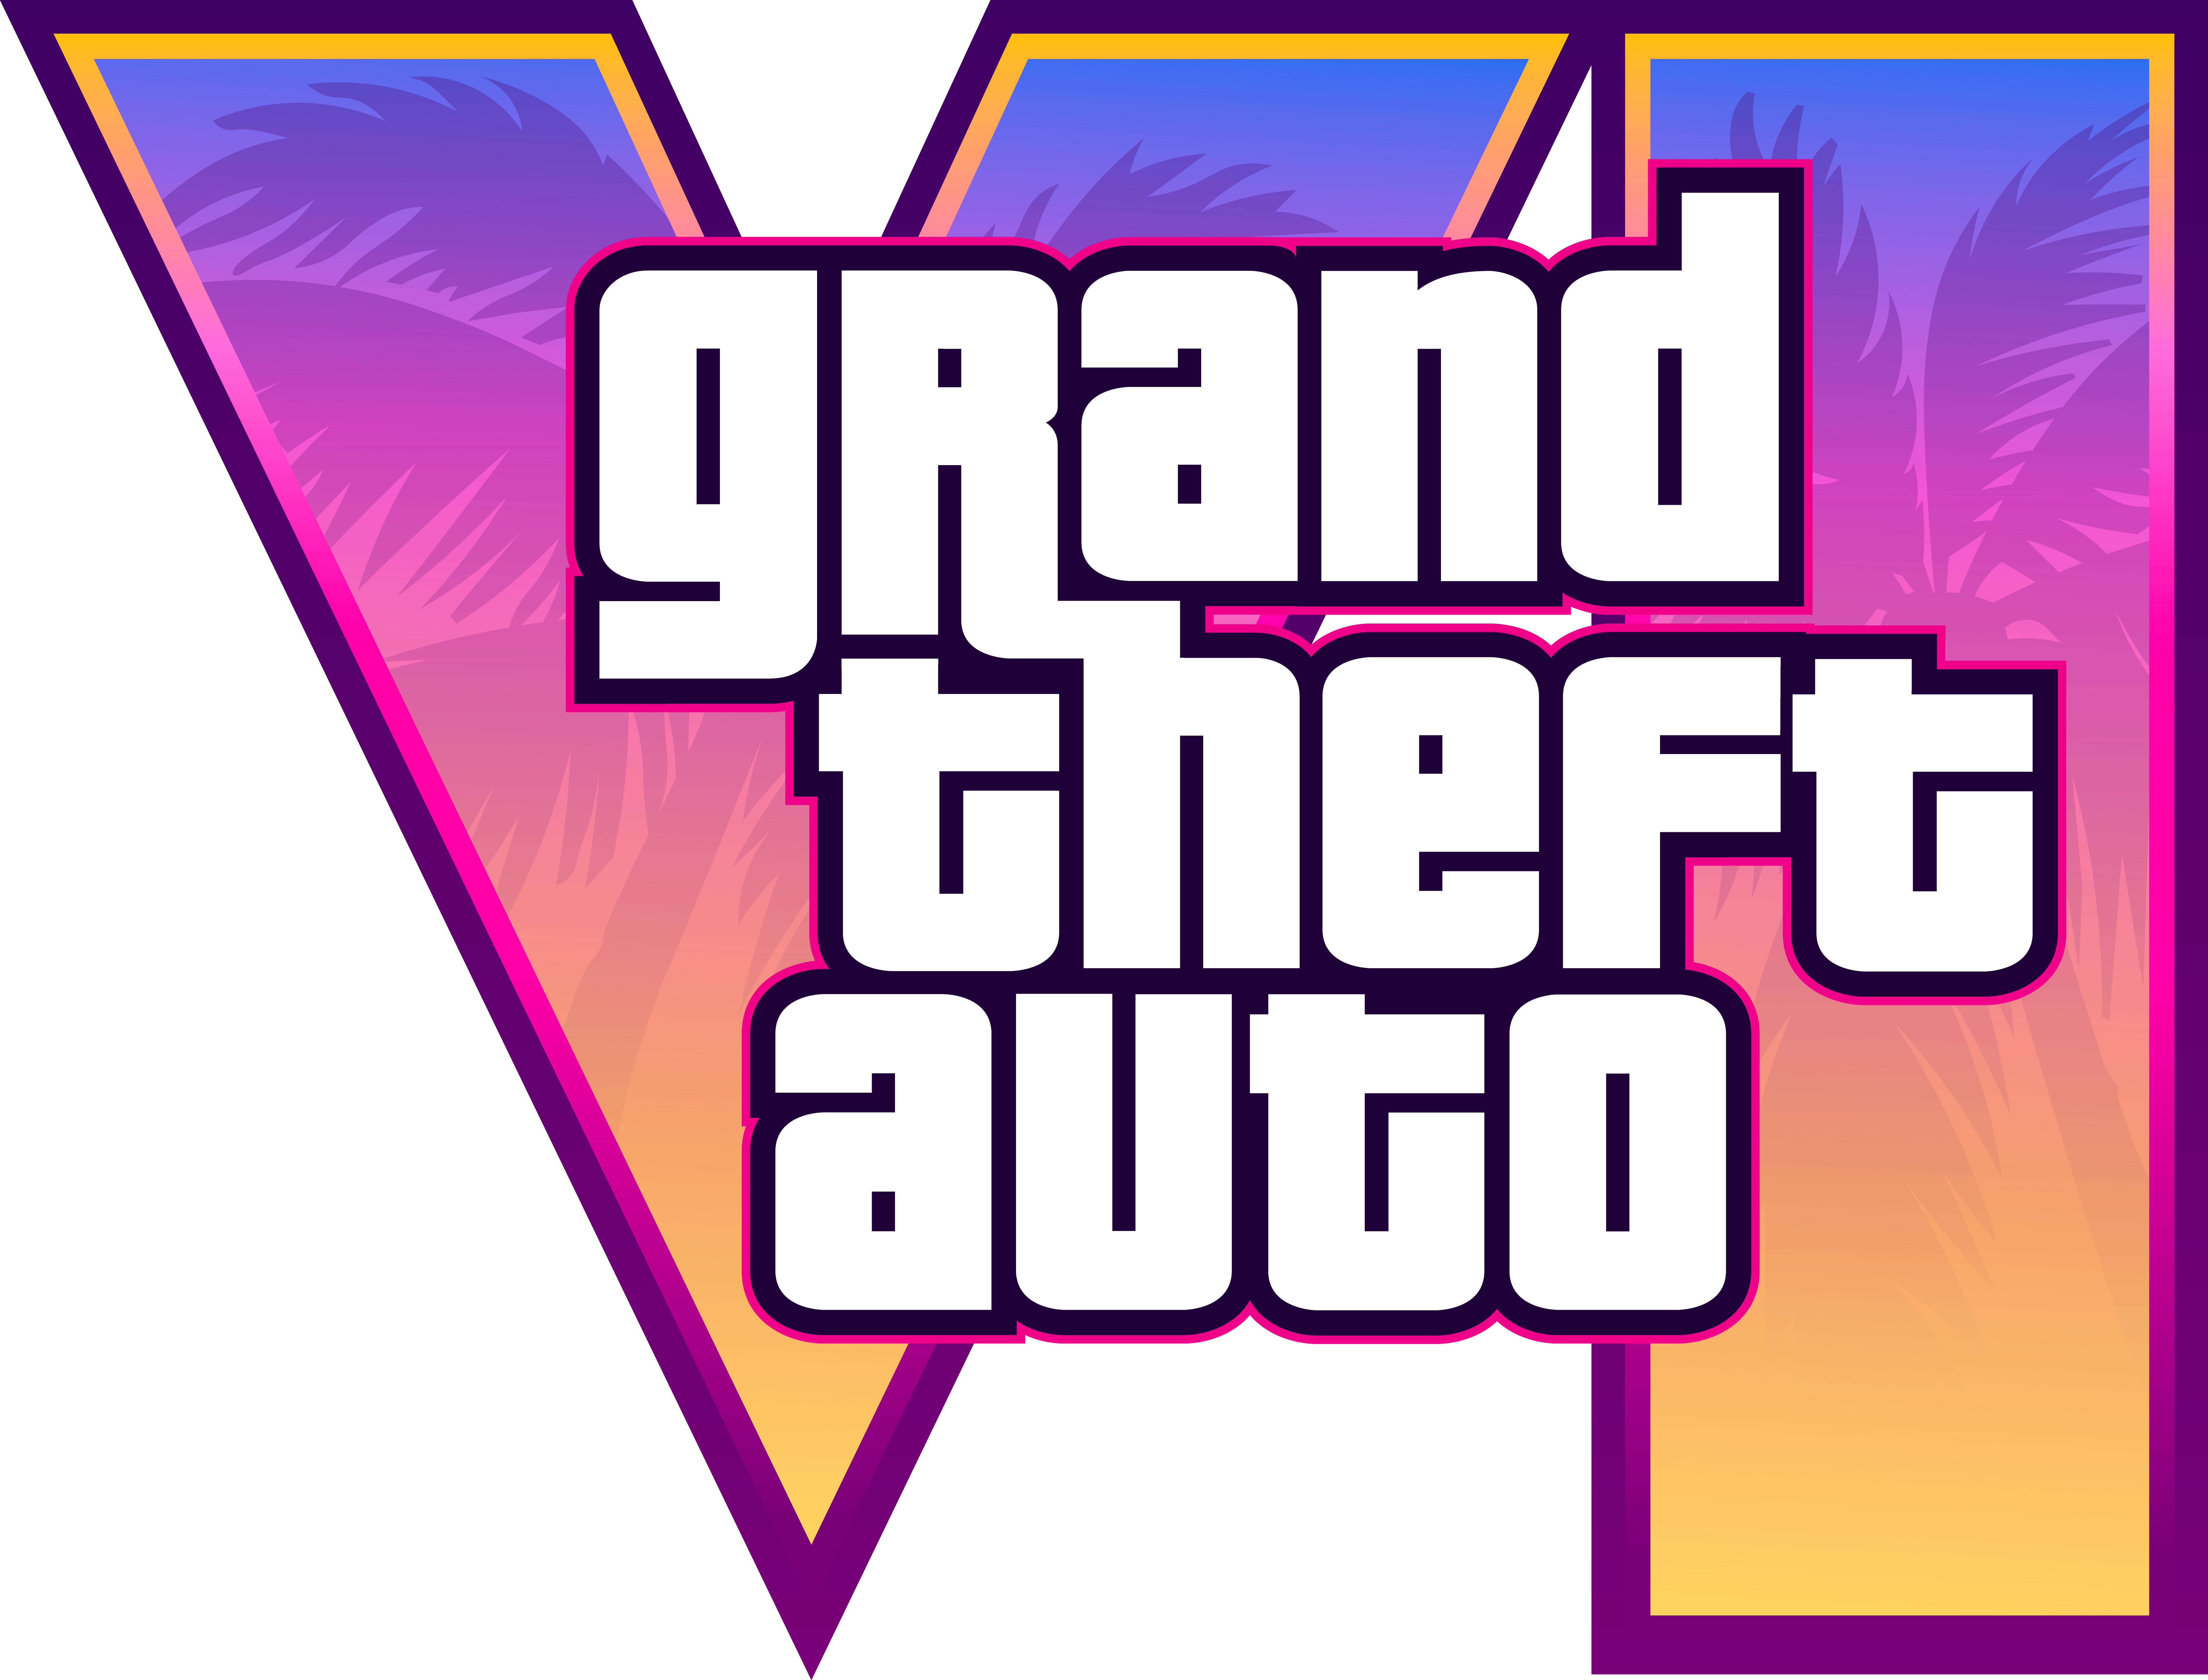 Grand Theft Auto V — Wikipédia